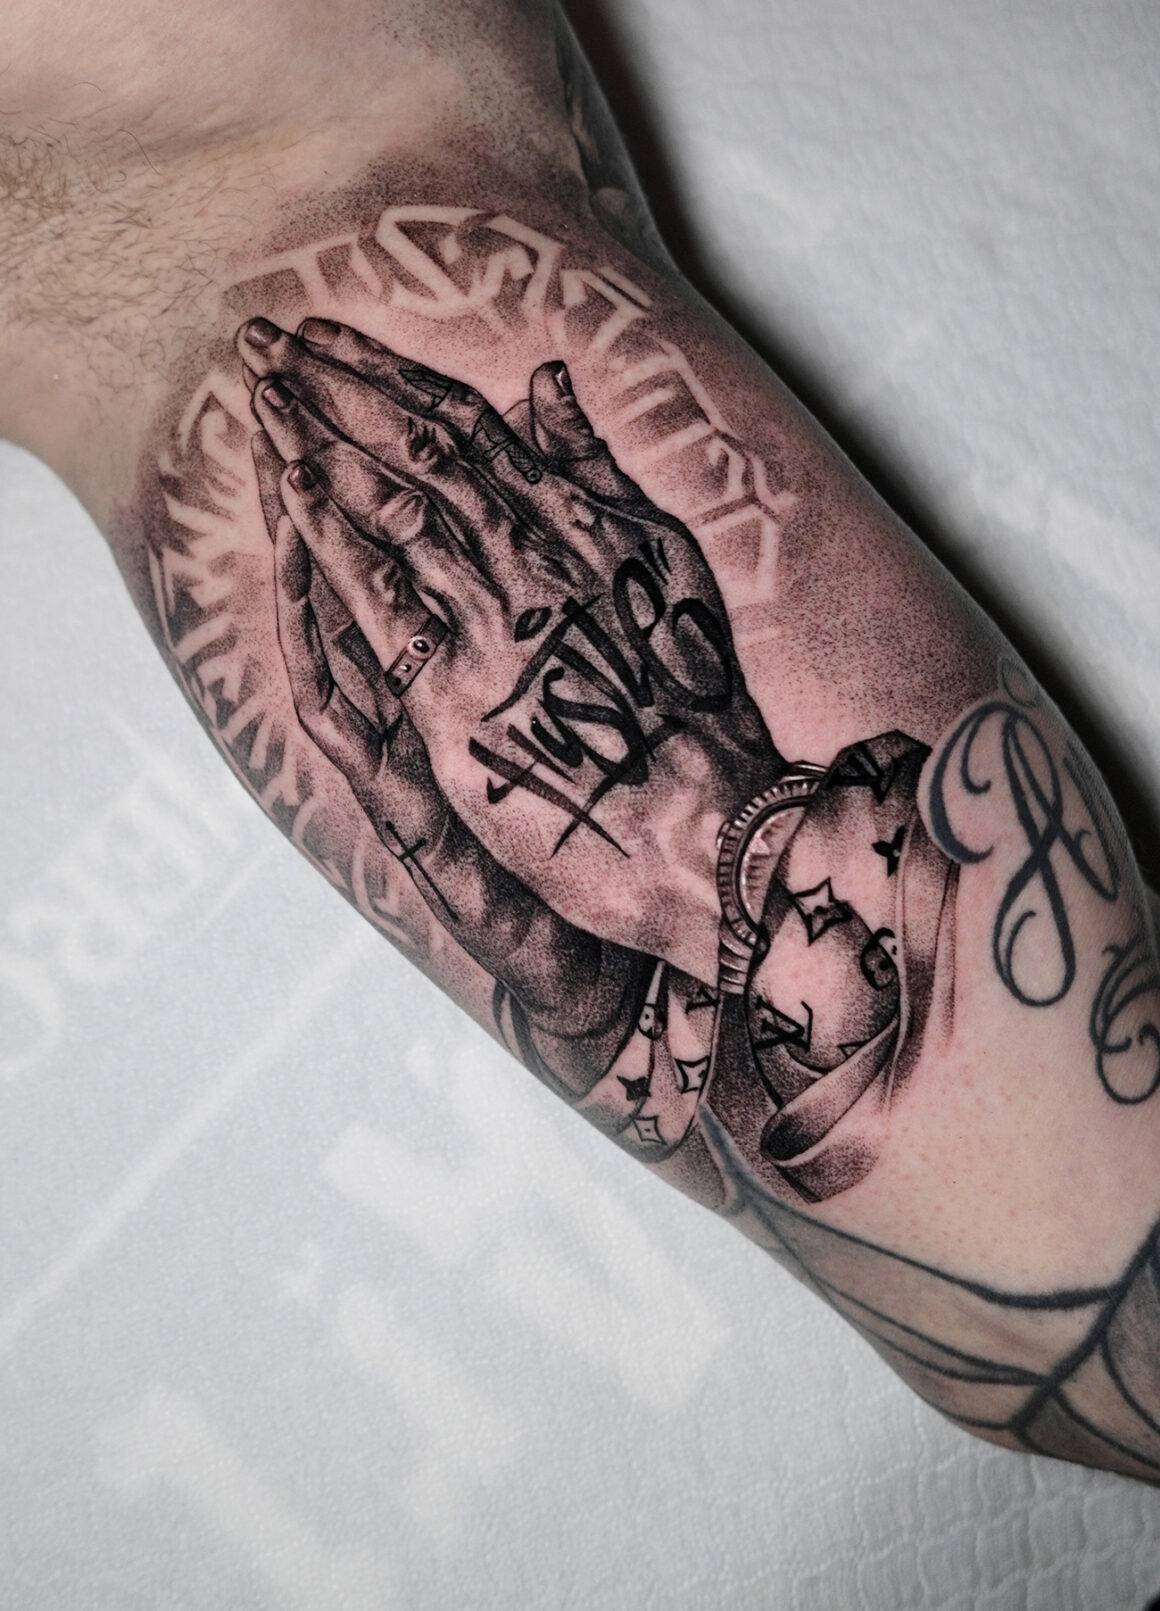 Tattoo by Max Bondar, @oplart